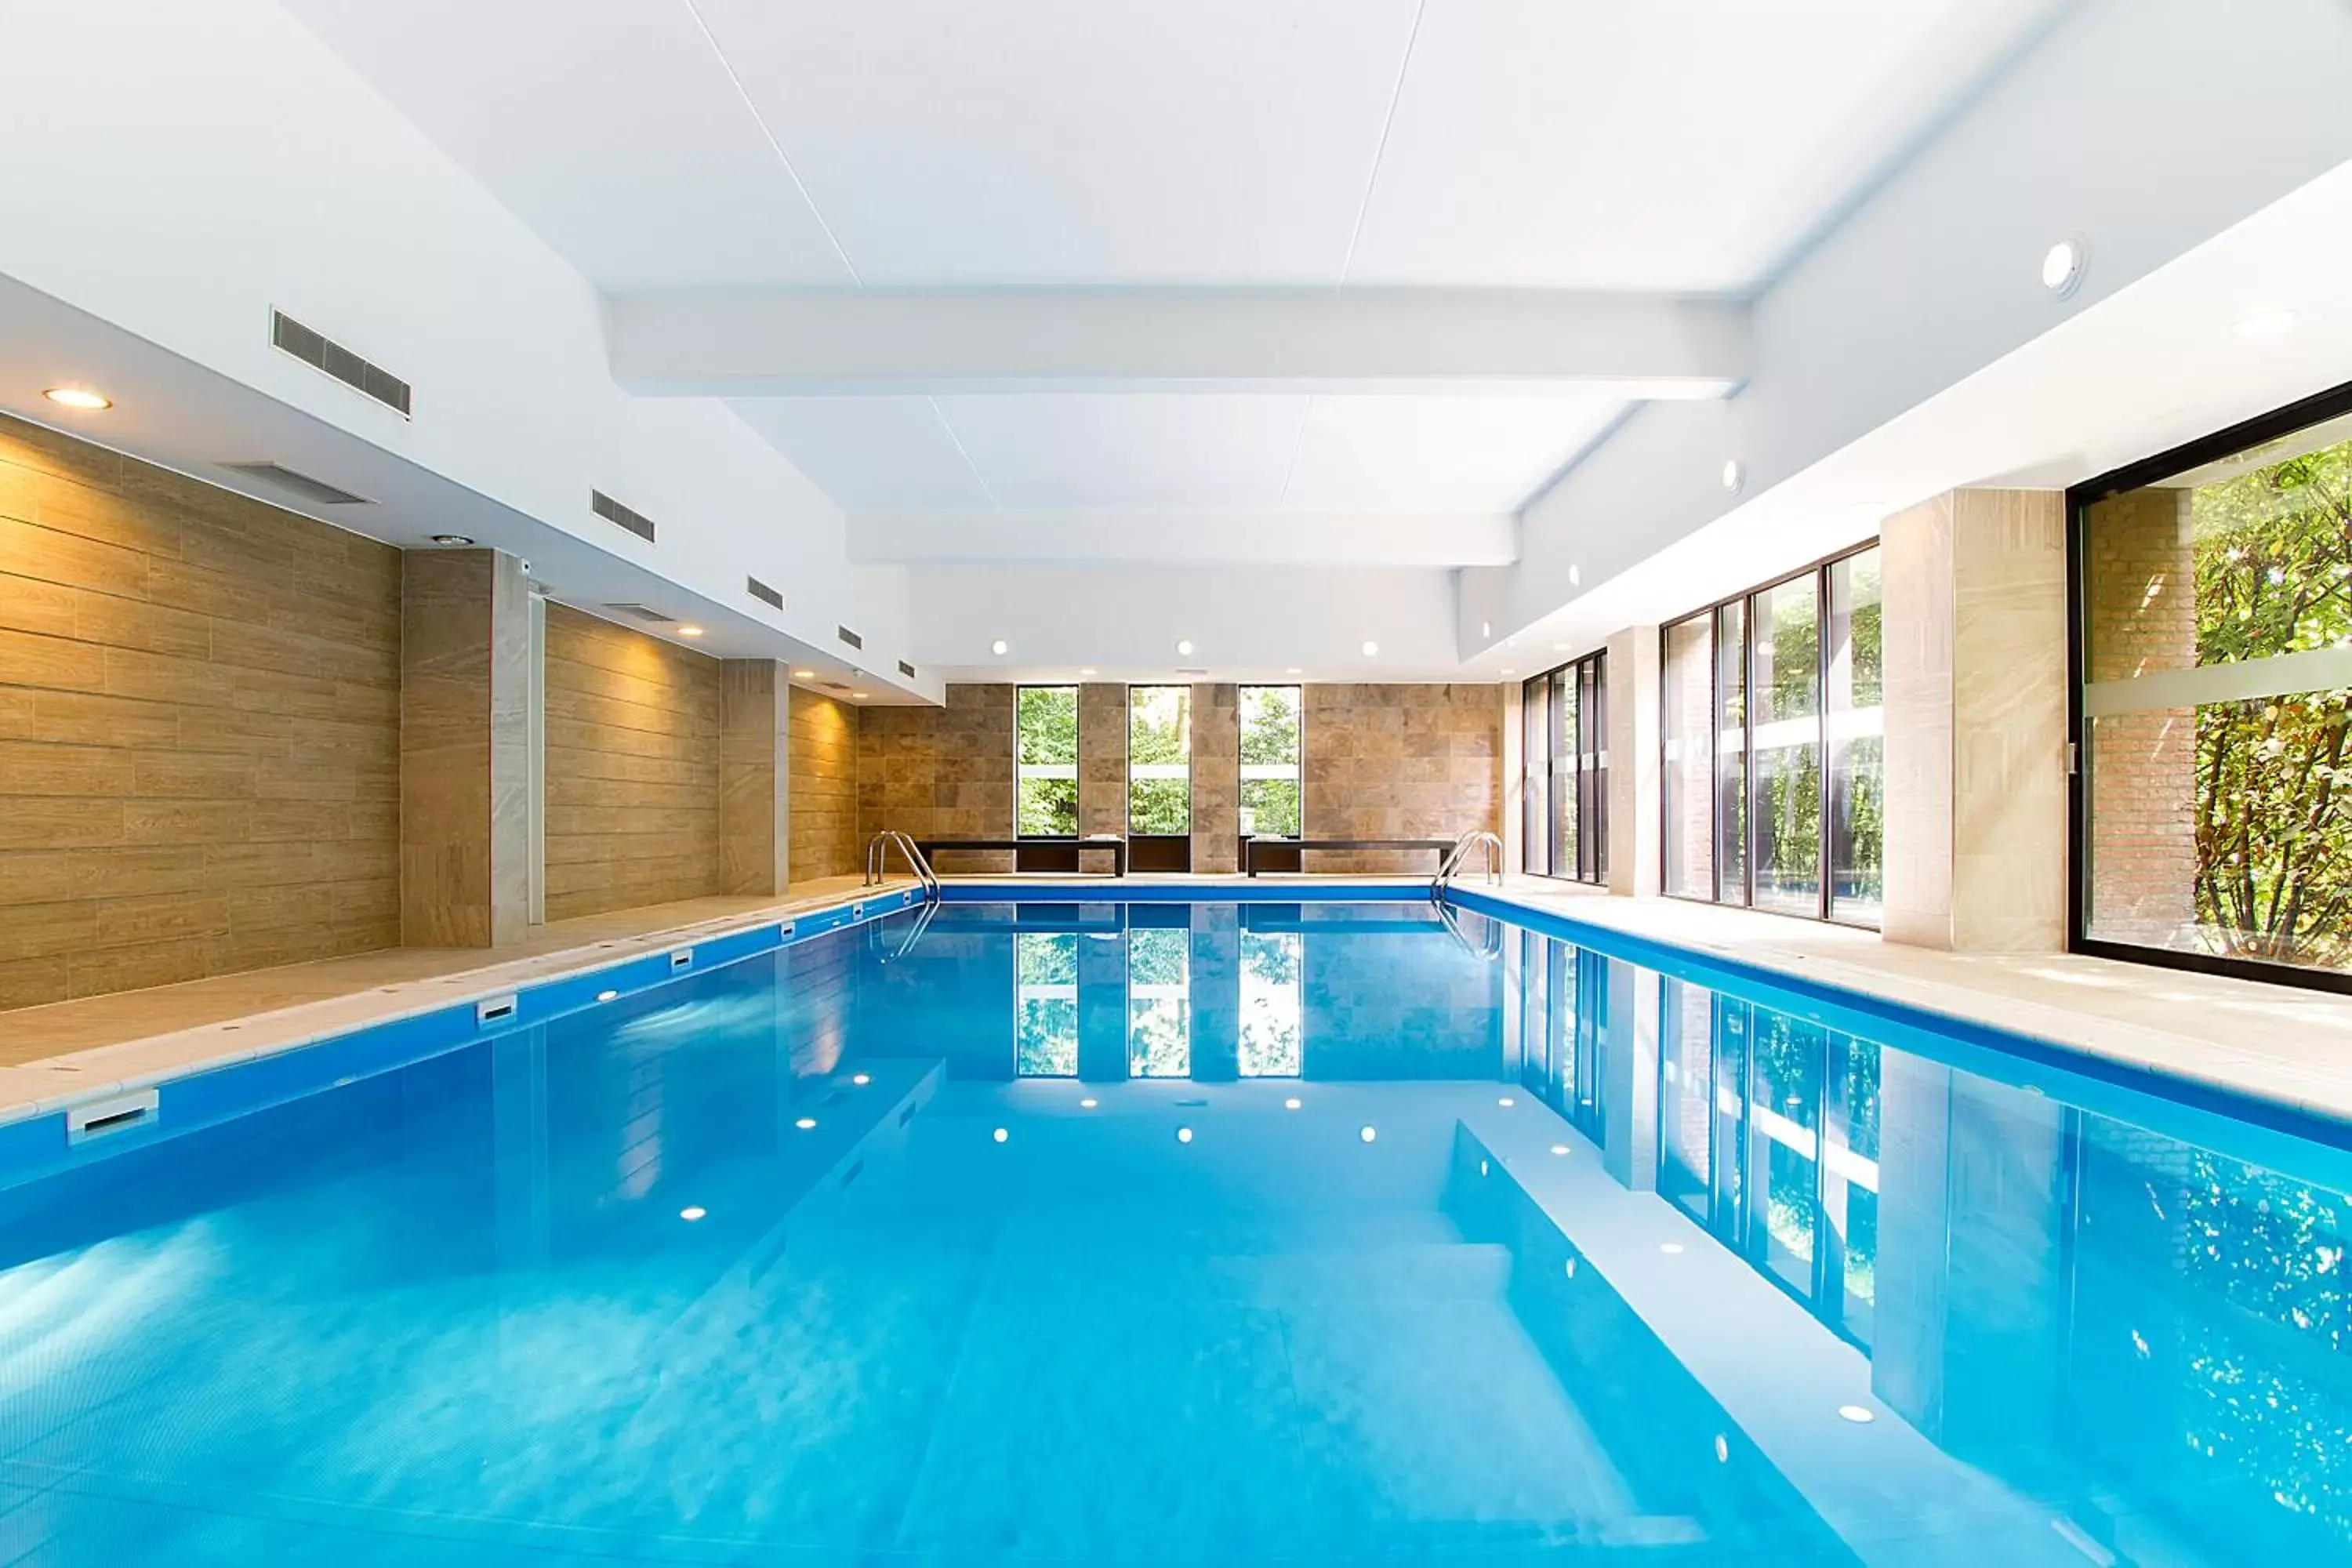 Swimming pool in Bastion Hotel Apeldoorn Het Loo